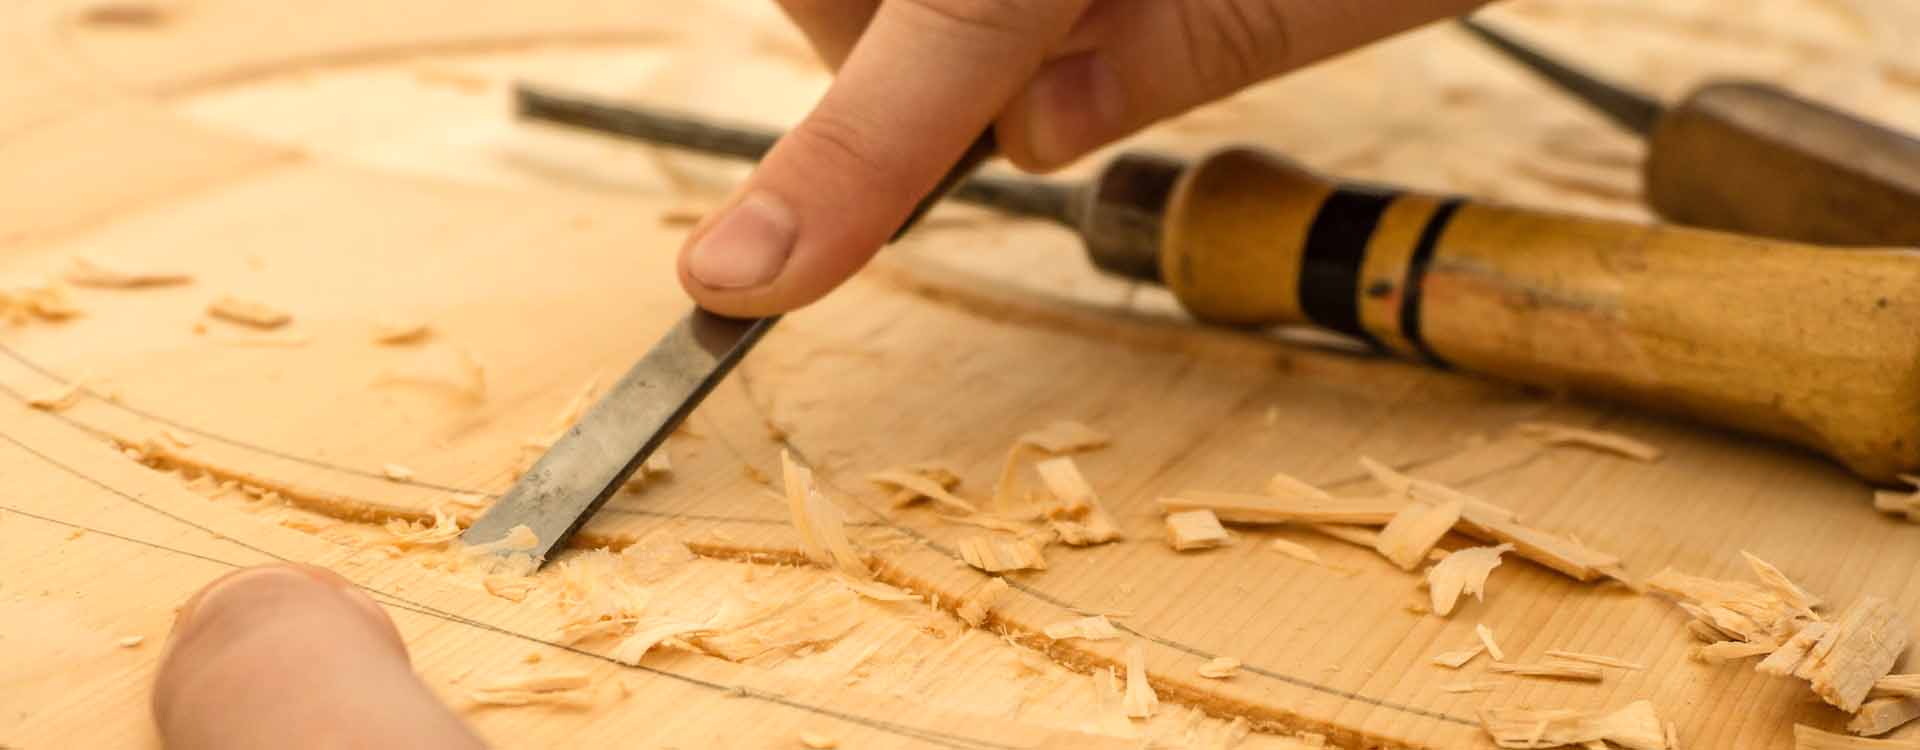 Vyrezávanie dreva dlátom - detail